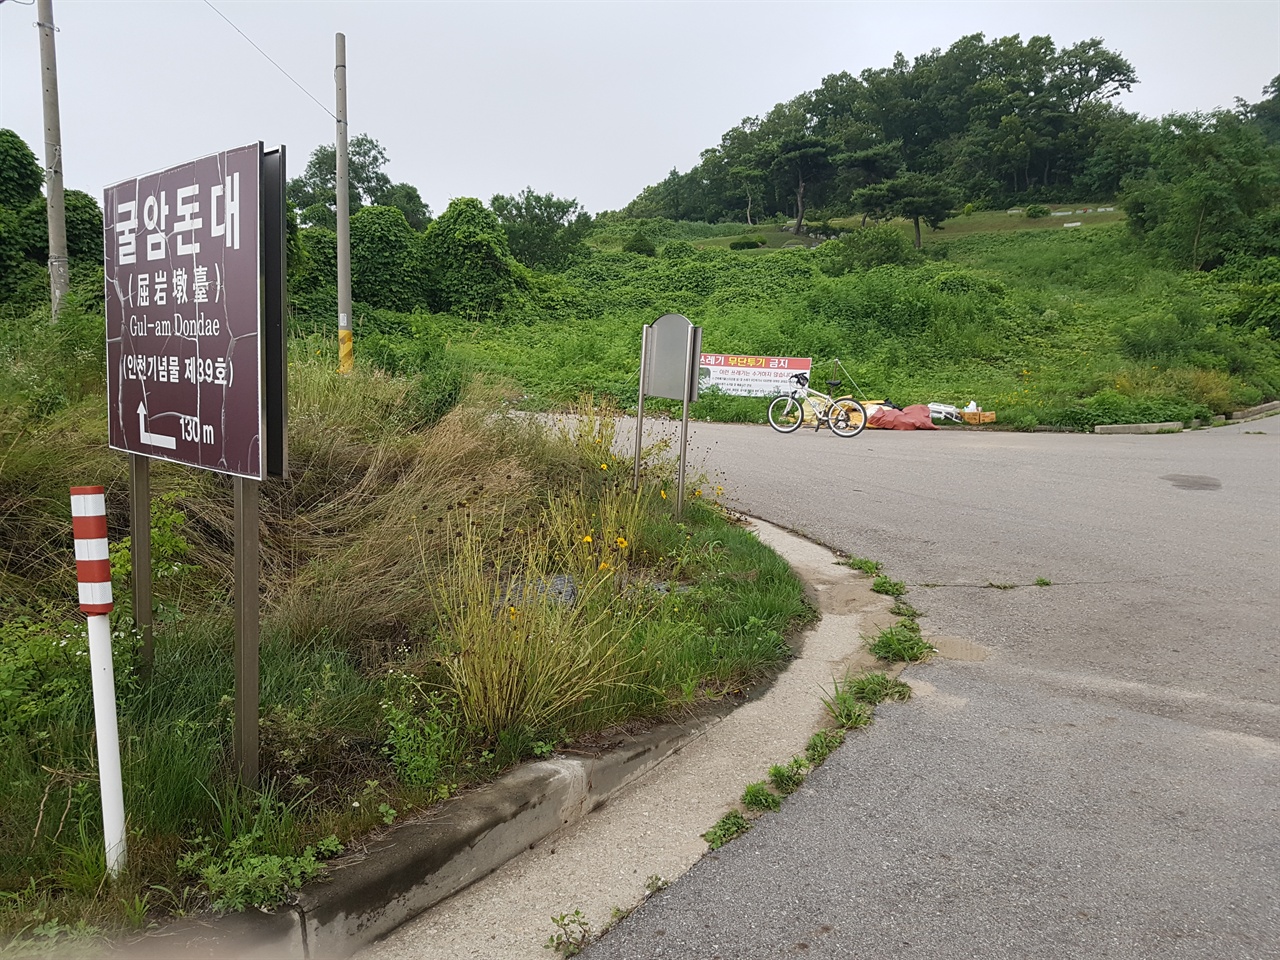 인천시광역시 지정 굴암돈대 입구에 불법쓰레기가 방치되어 있었습니다.